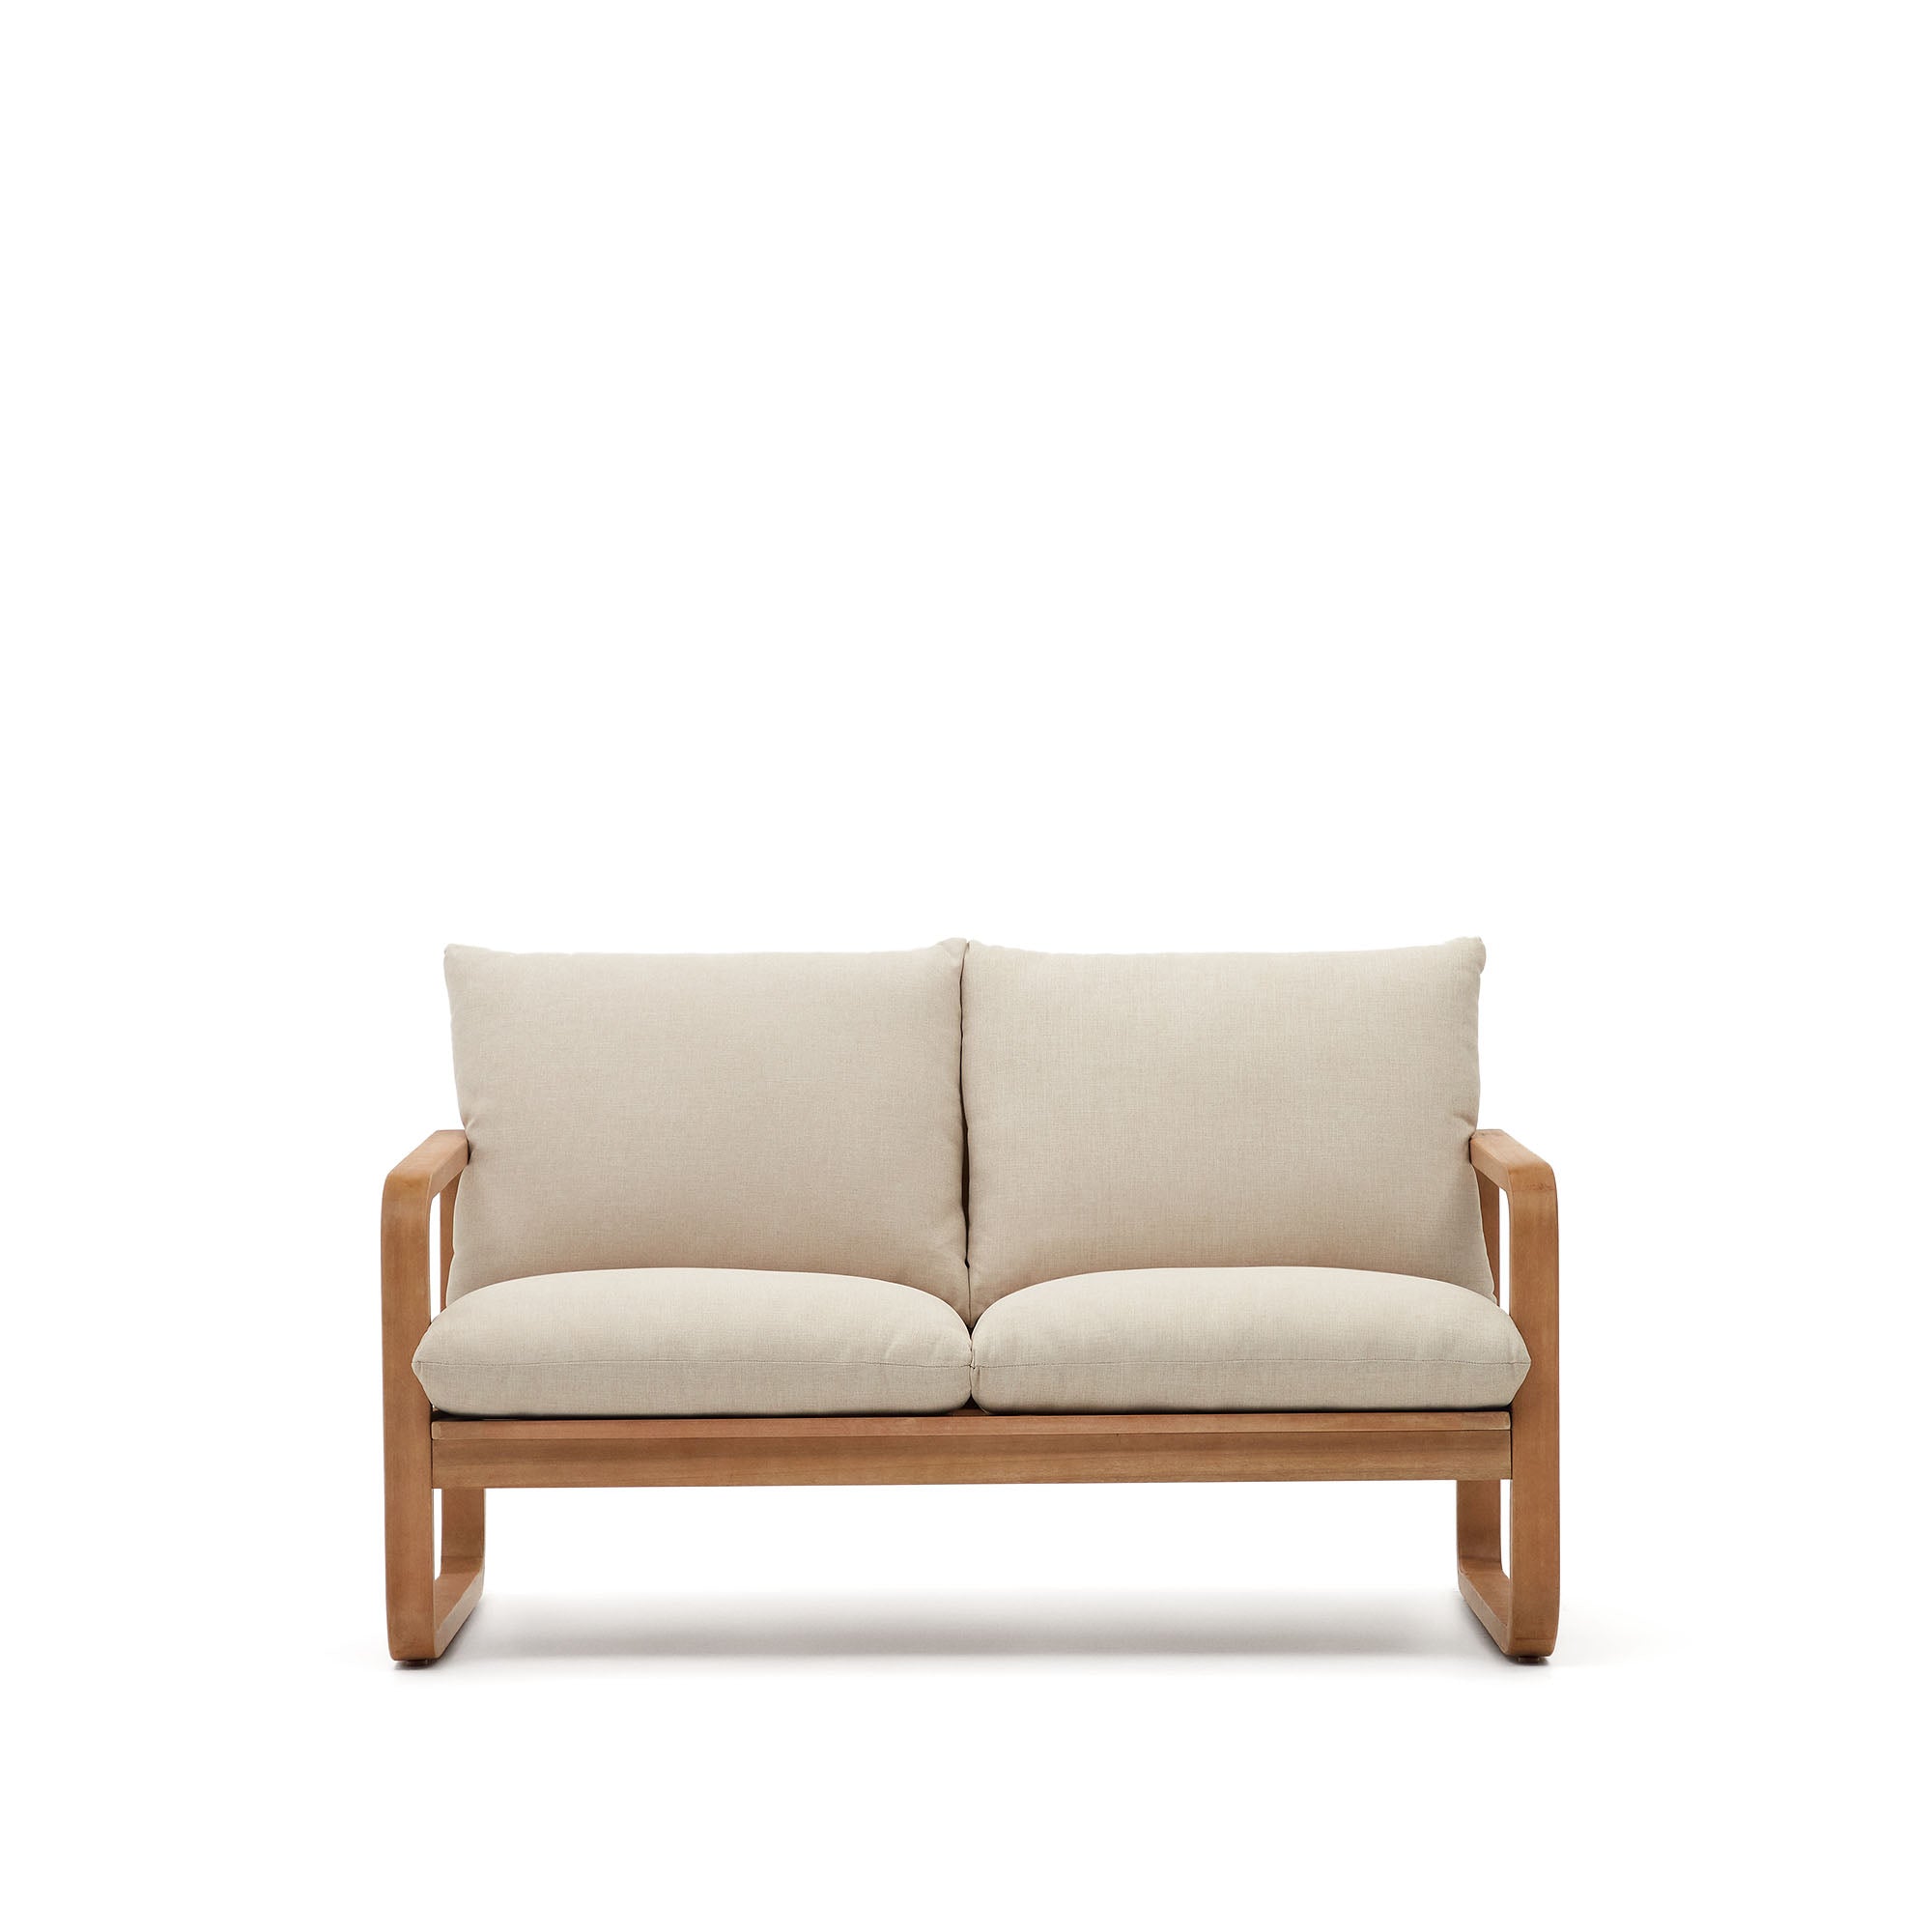 Sacaleta 2 személyes kanapé, tömör eukaliptusz fából 142 cm